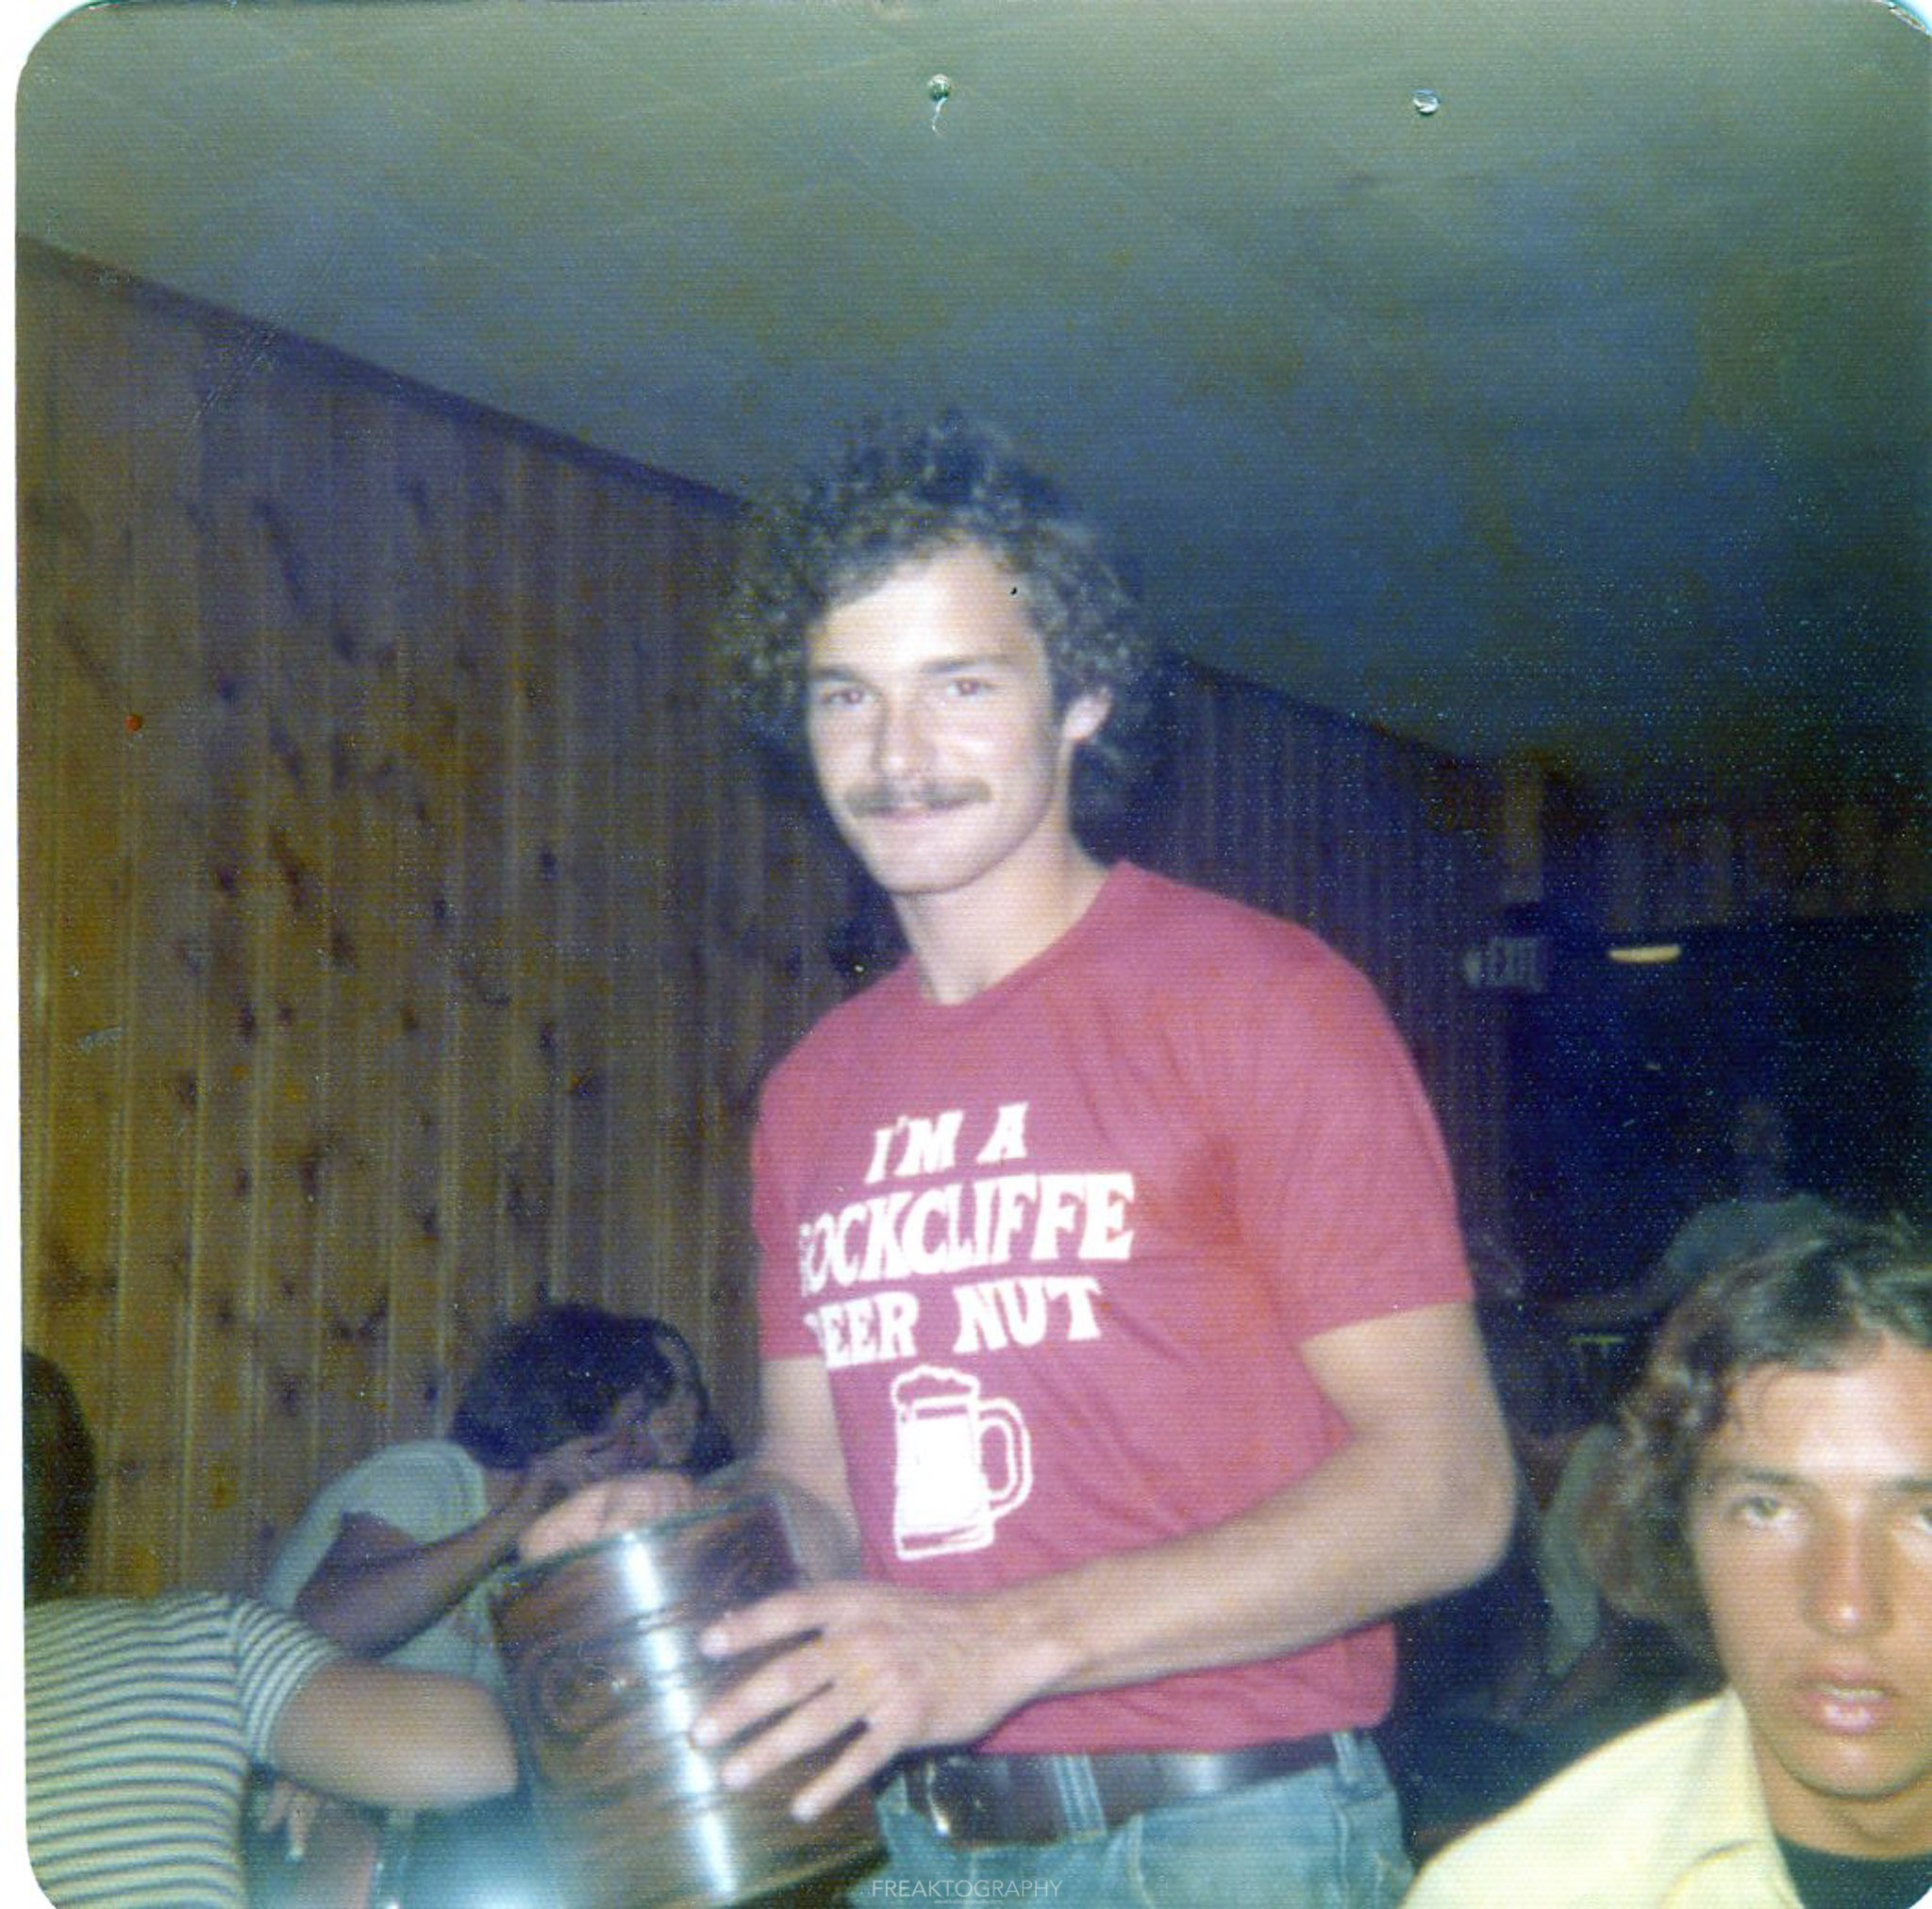 Rockcliffe tavern 1970s 80's